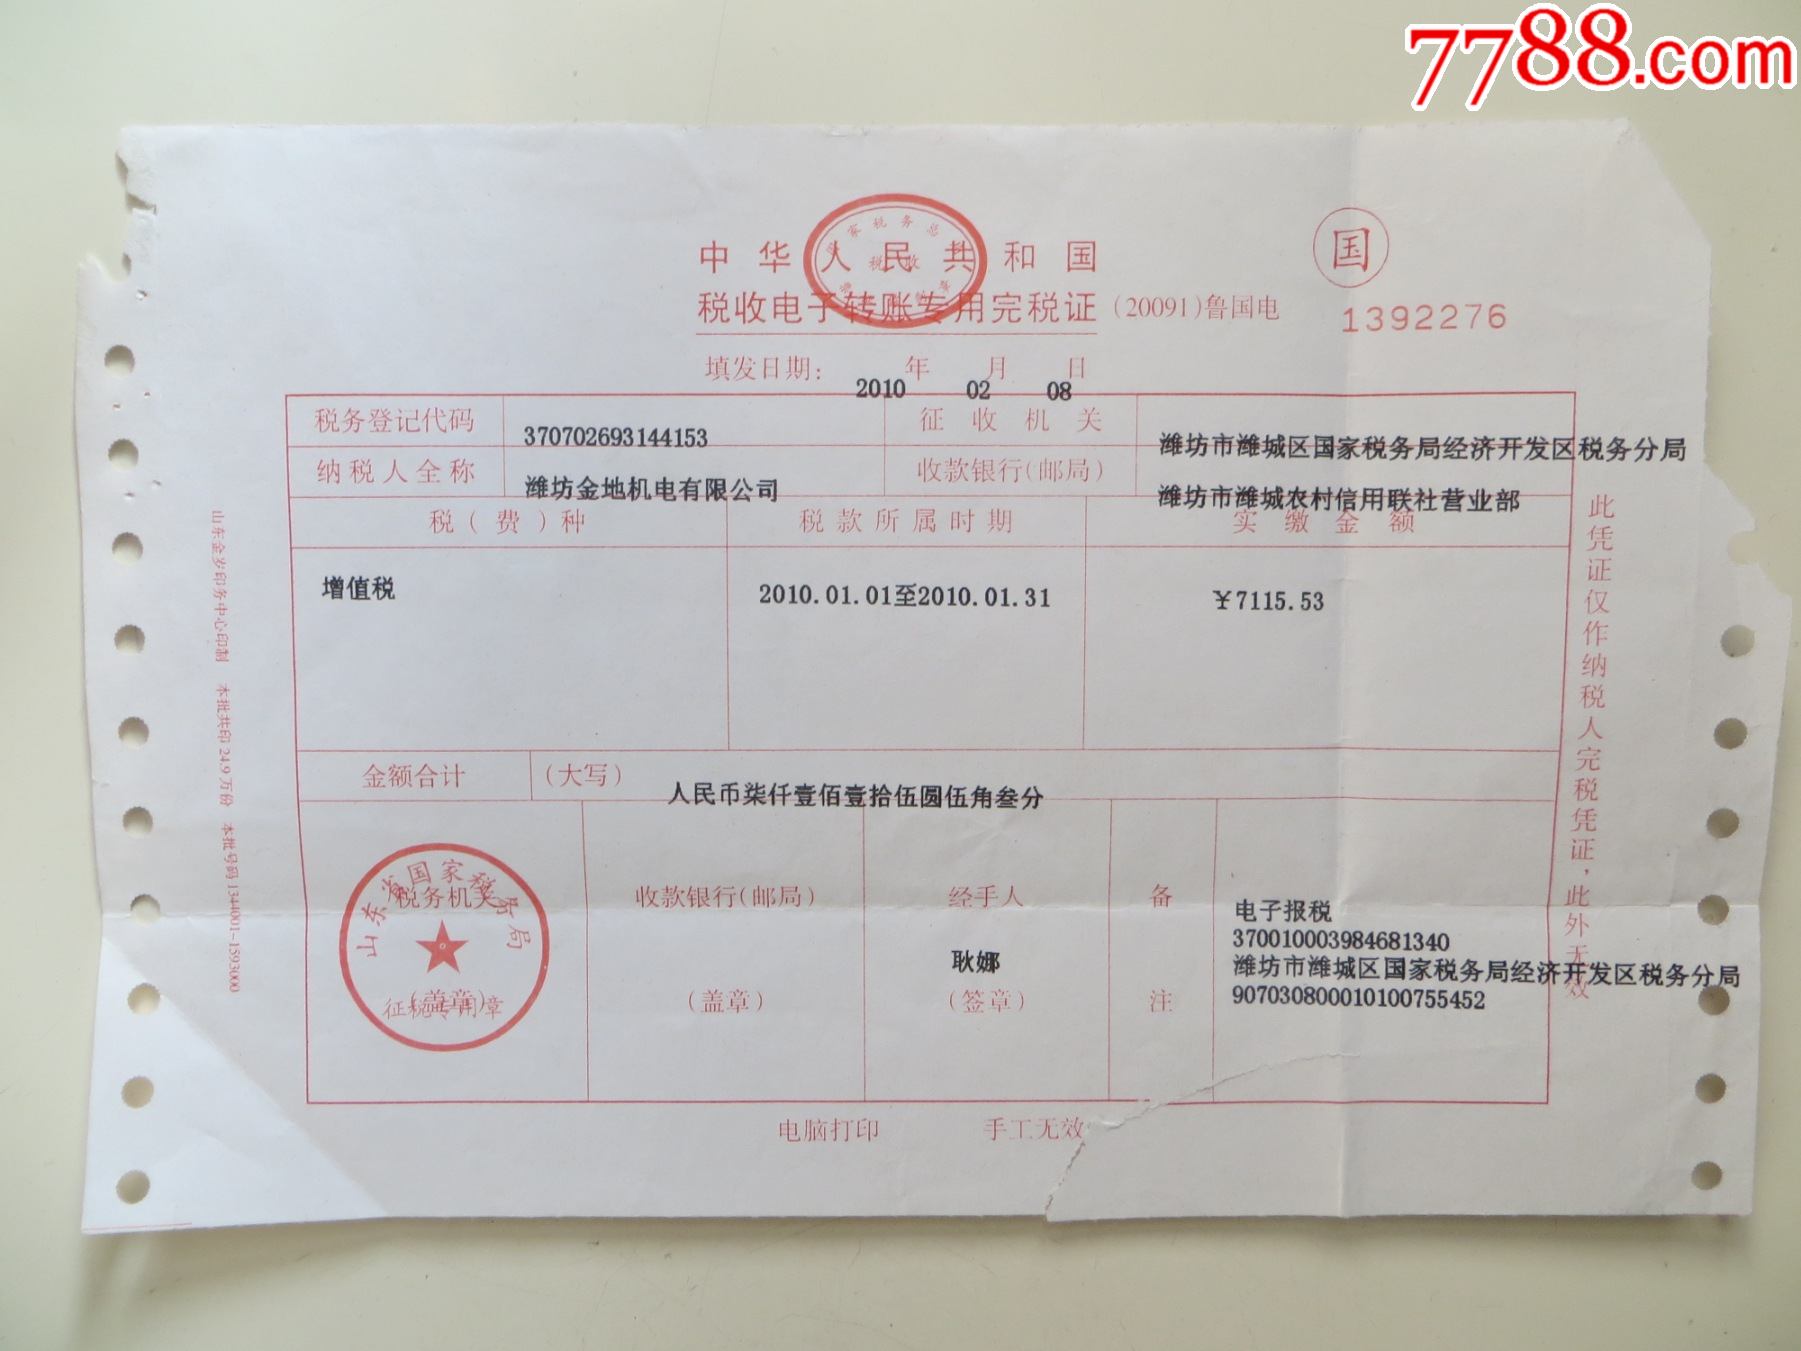 中华人民共和国税收电子专用完税证